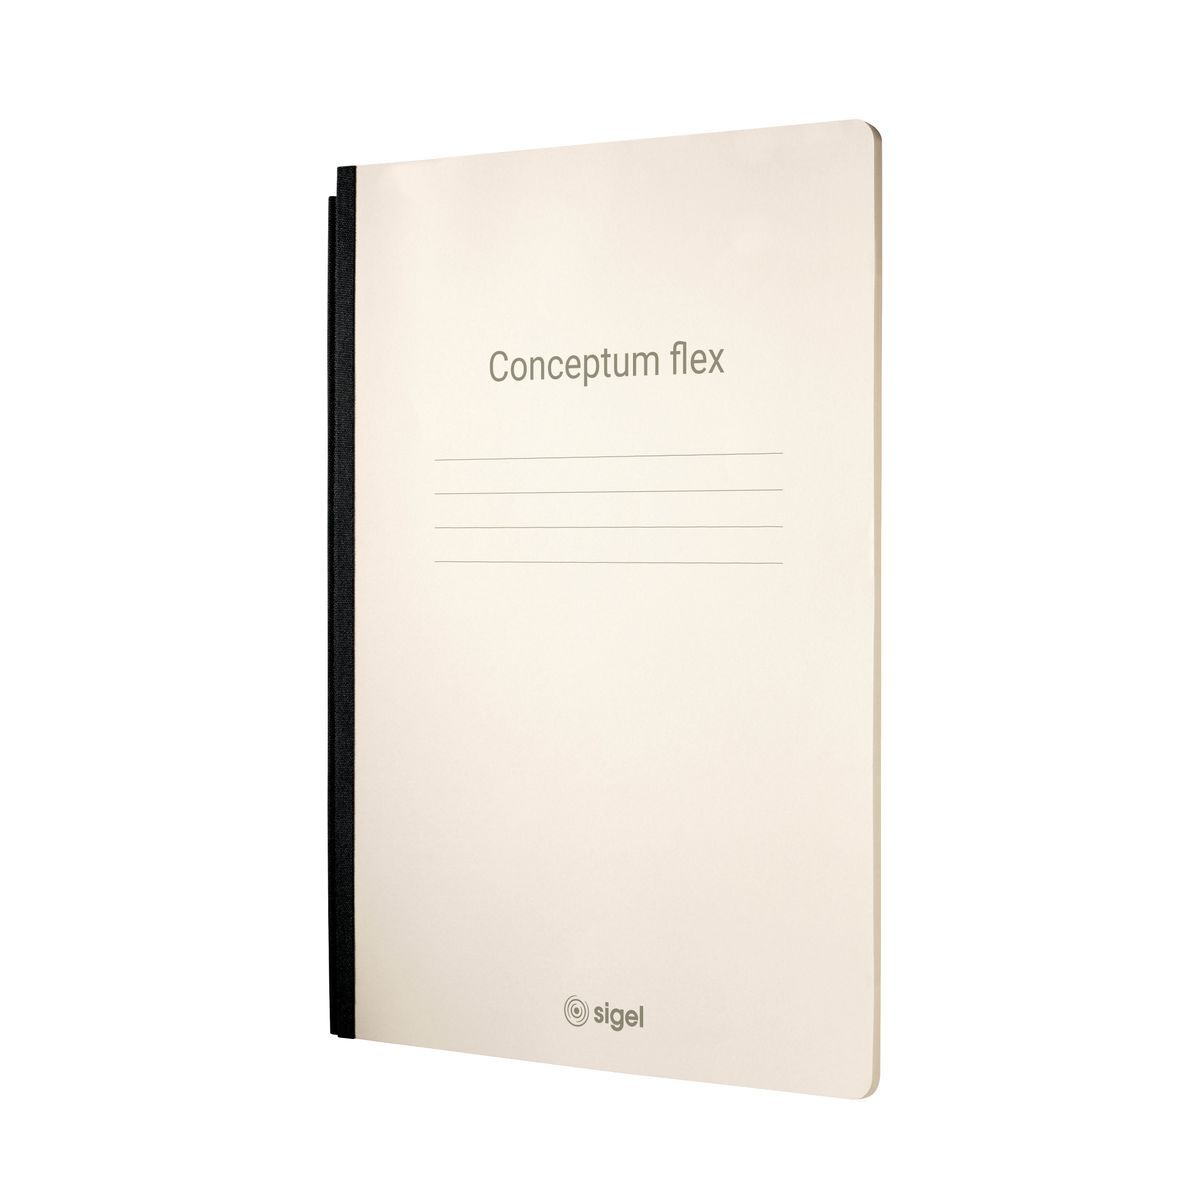 Notizheft Conceptum flex - A5, 92 Seiten, kariert